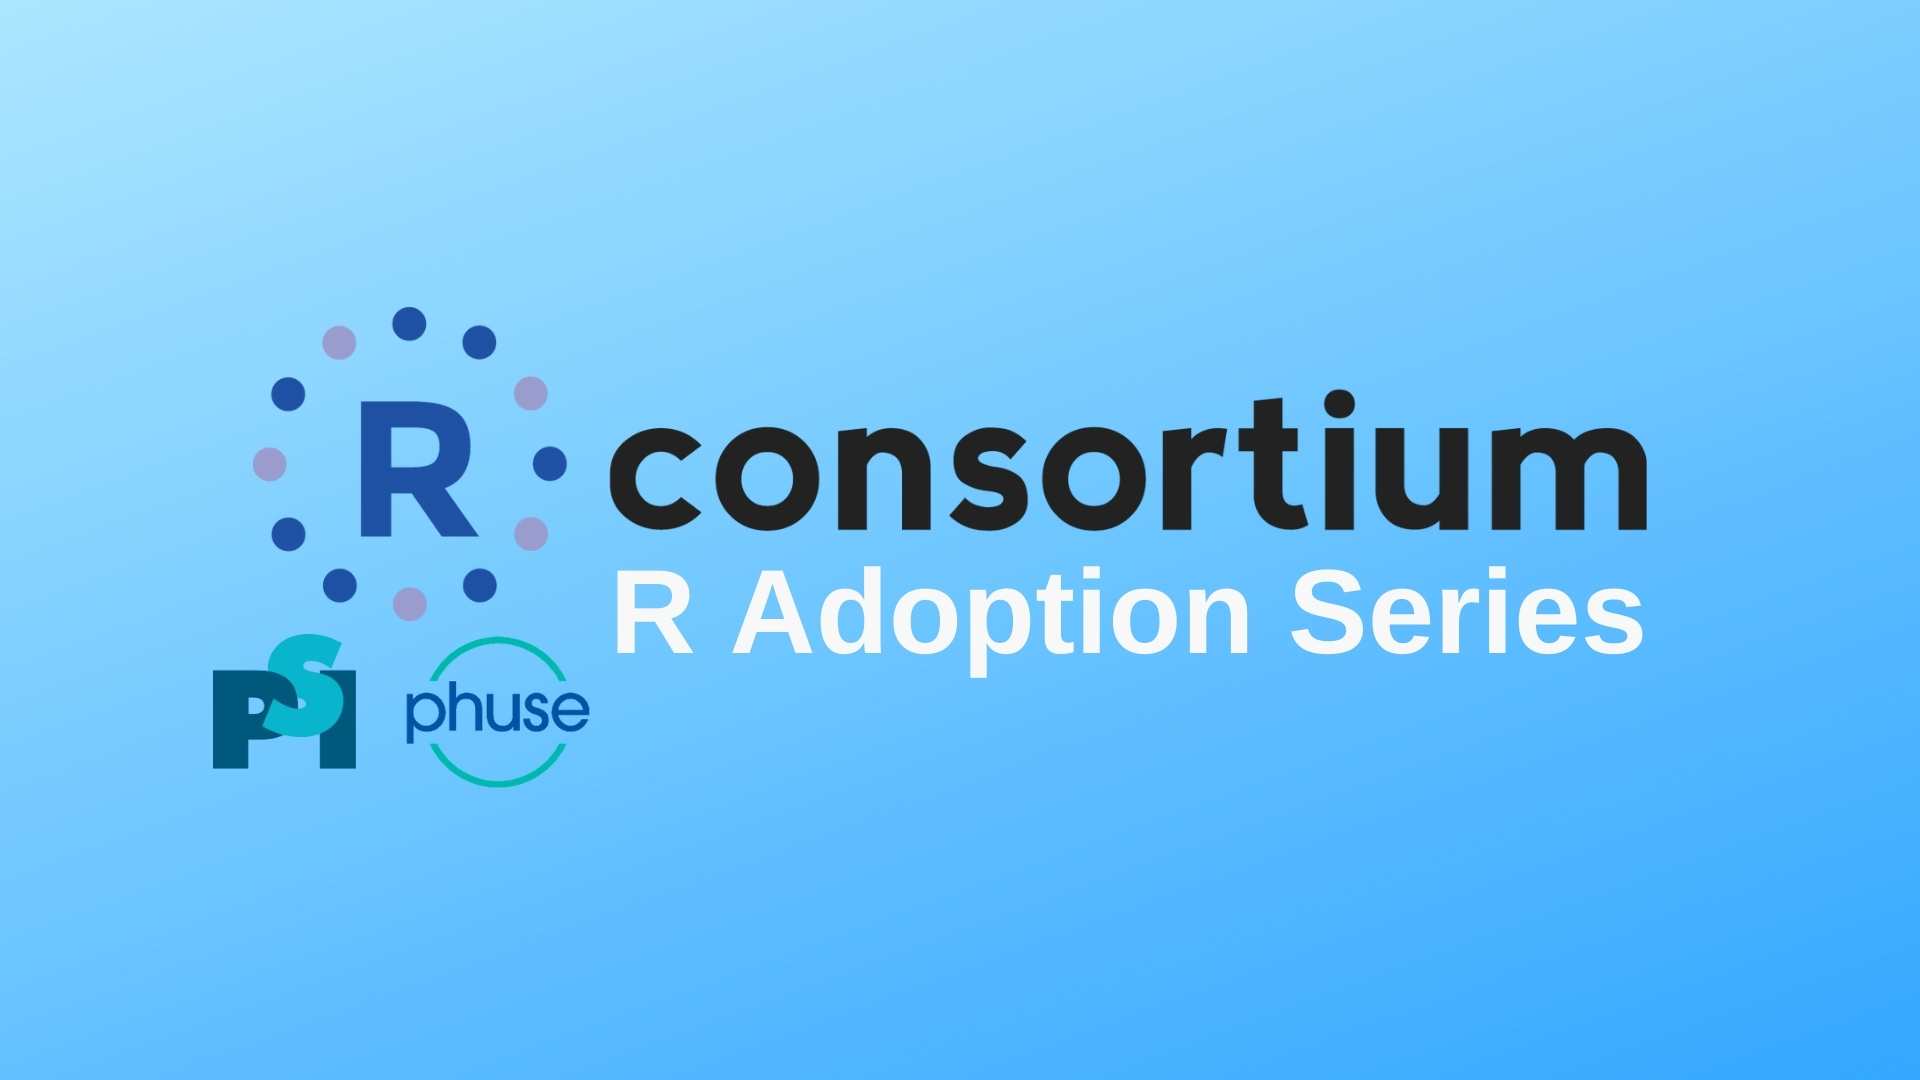 R Consortium R Adoption Series